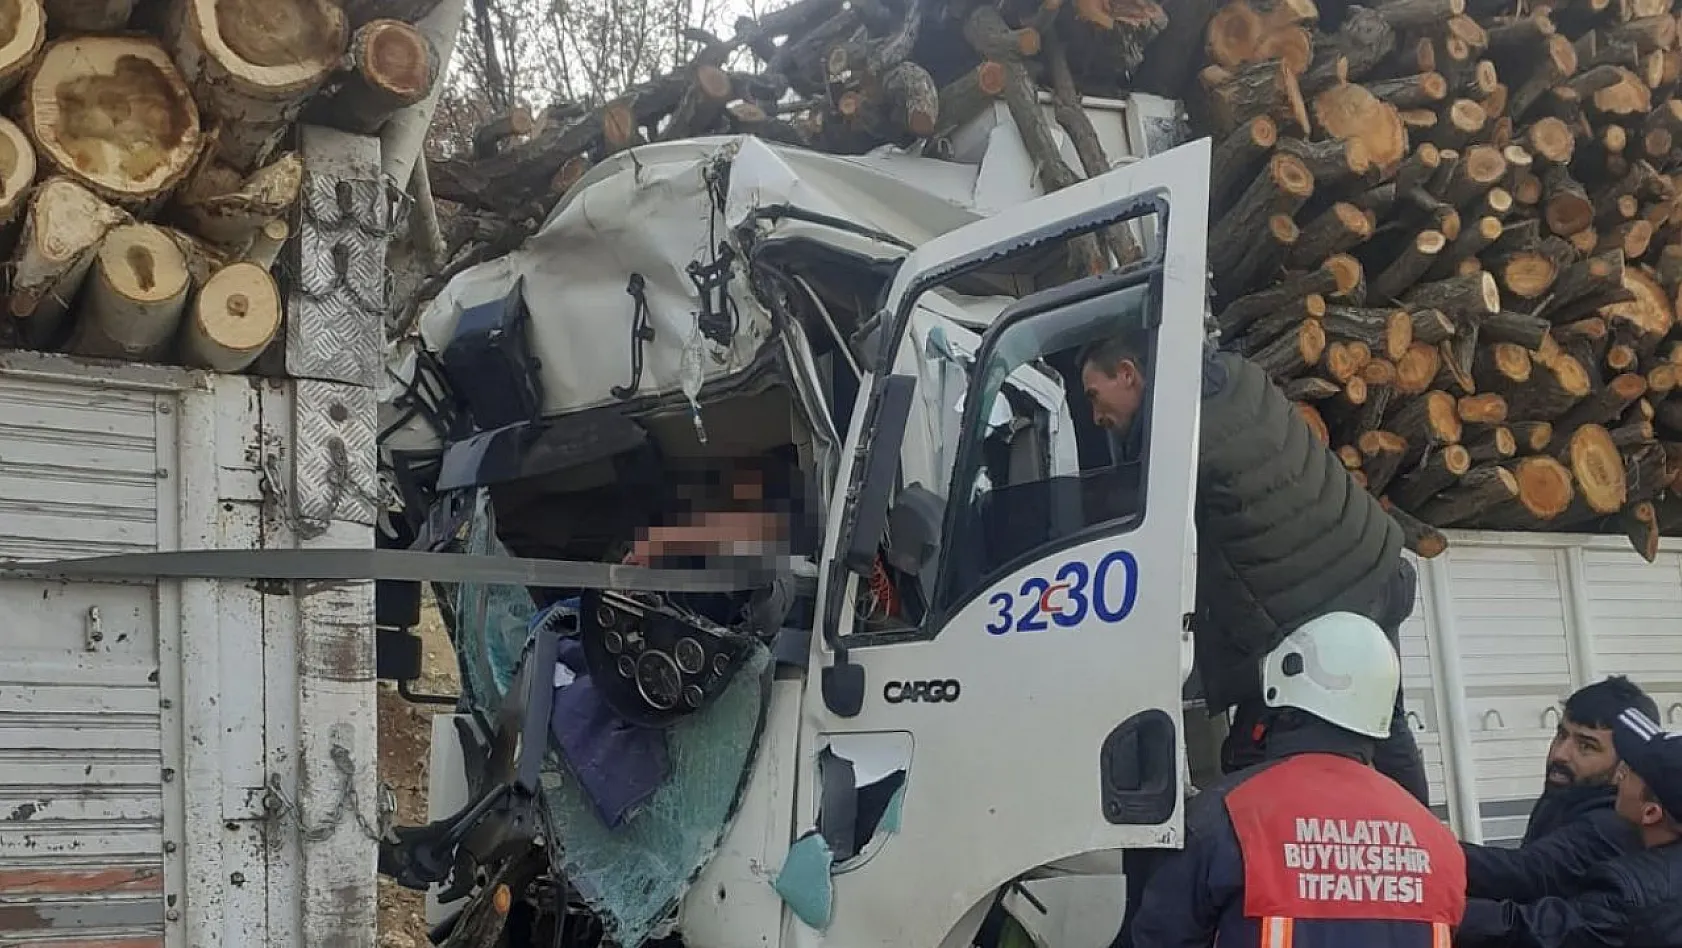 Odun yüklü iki kamyon çarpıştı: 1 yaralı